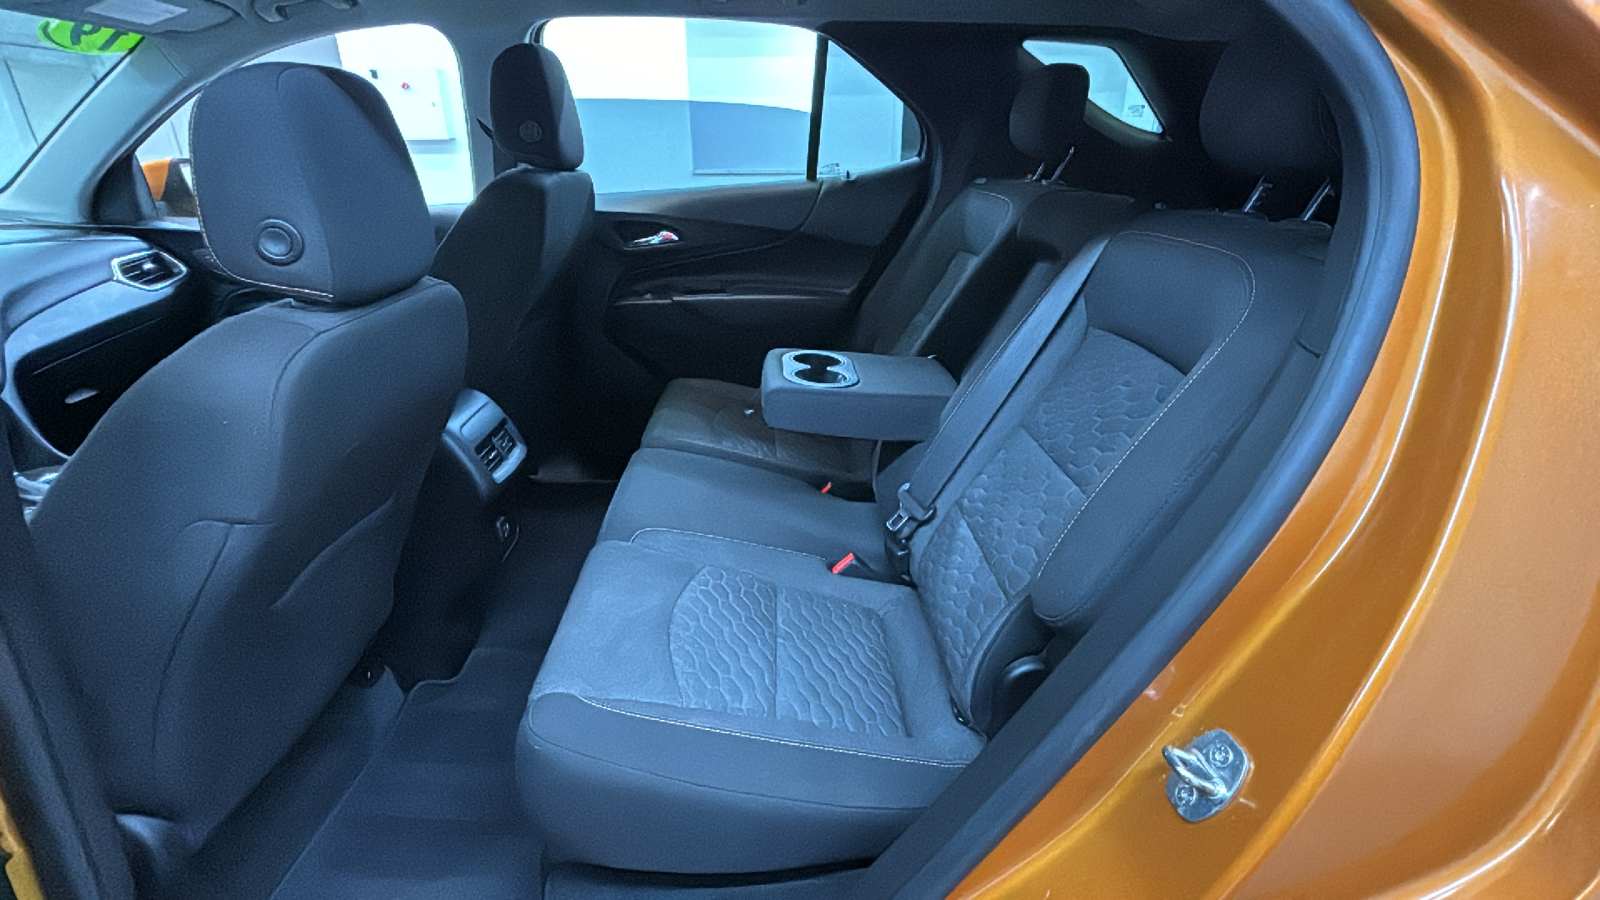 2019 Chevrolet Equinox LT 15